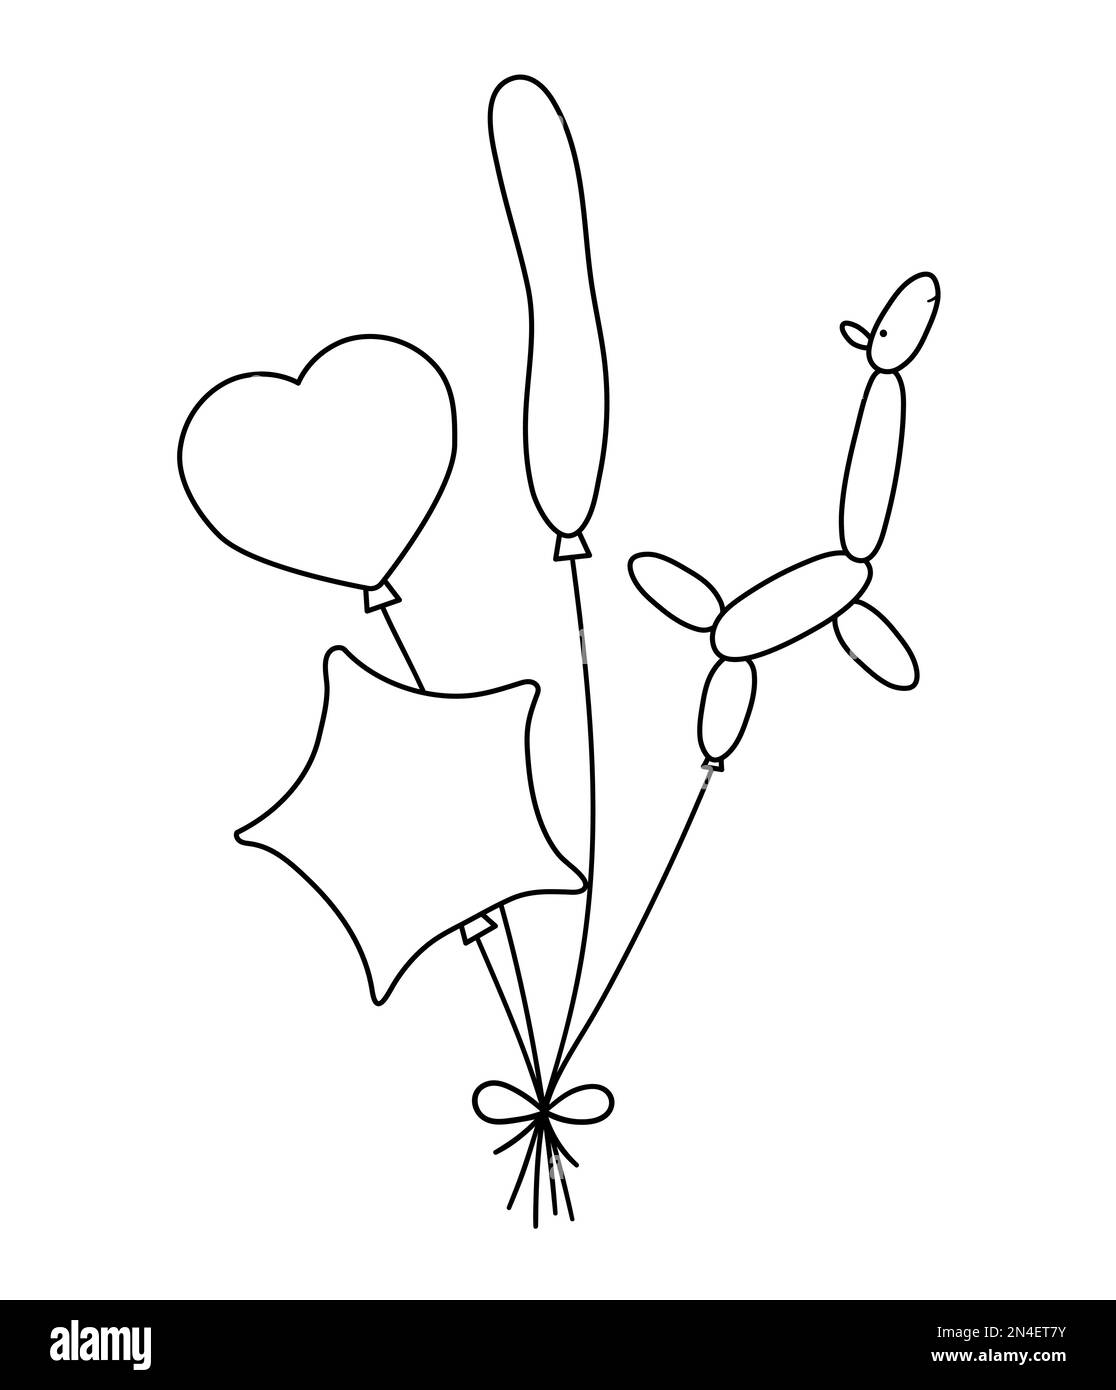 Vector schwarz-weiß niedliche Ballons in verschiedenen Formen mit Schleife. Lustiges Geburtstagsgeschenk für Karte, Poster, Print-Design. Feiertagsillustrierung Stock Vektor